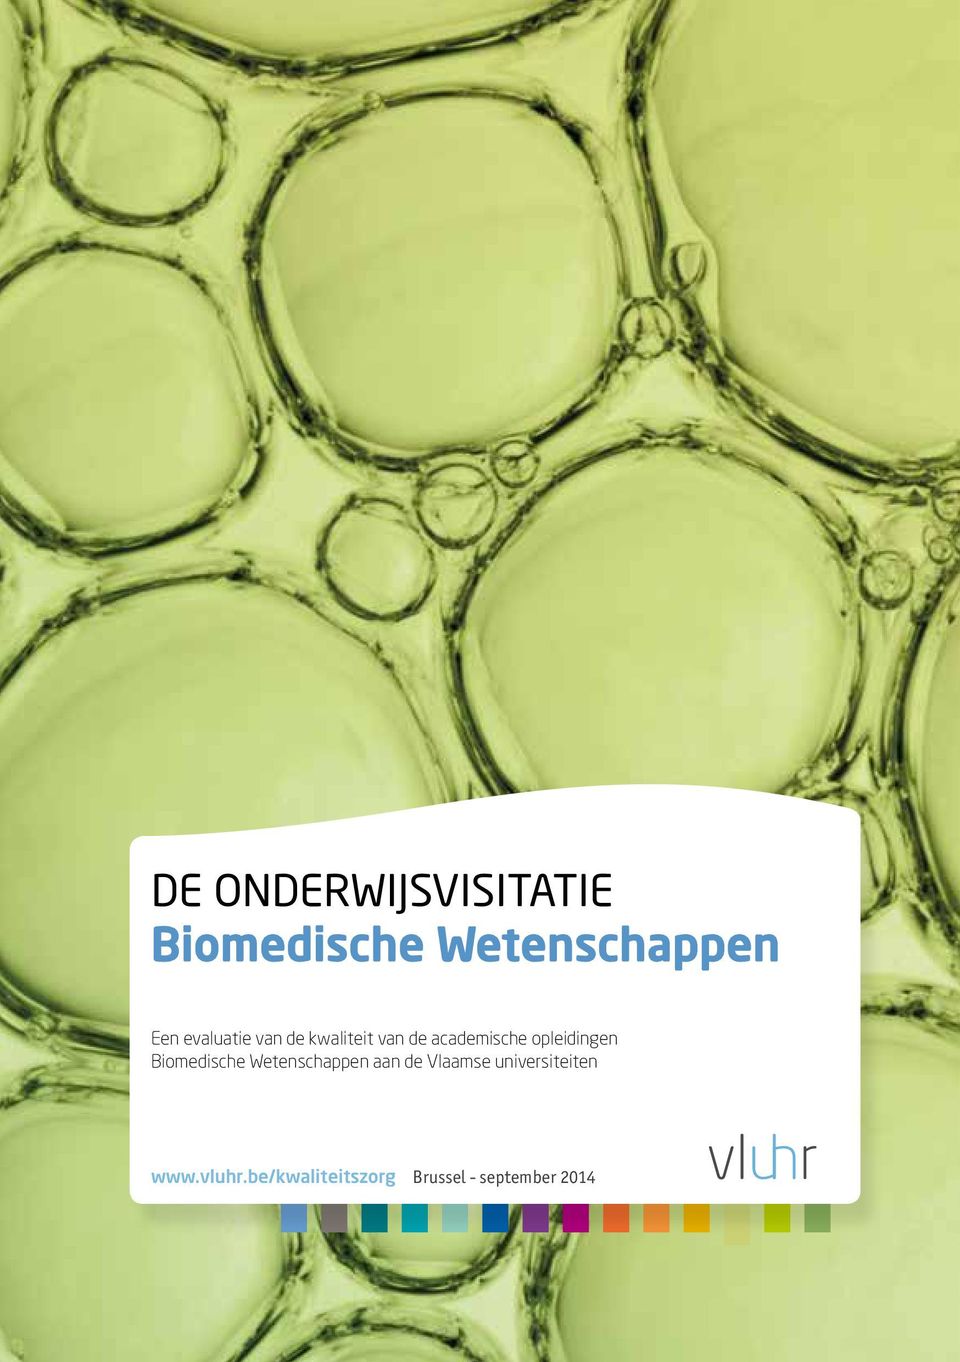 opleidingen Biomedische Wetenschappen aan de Vlaamse